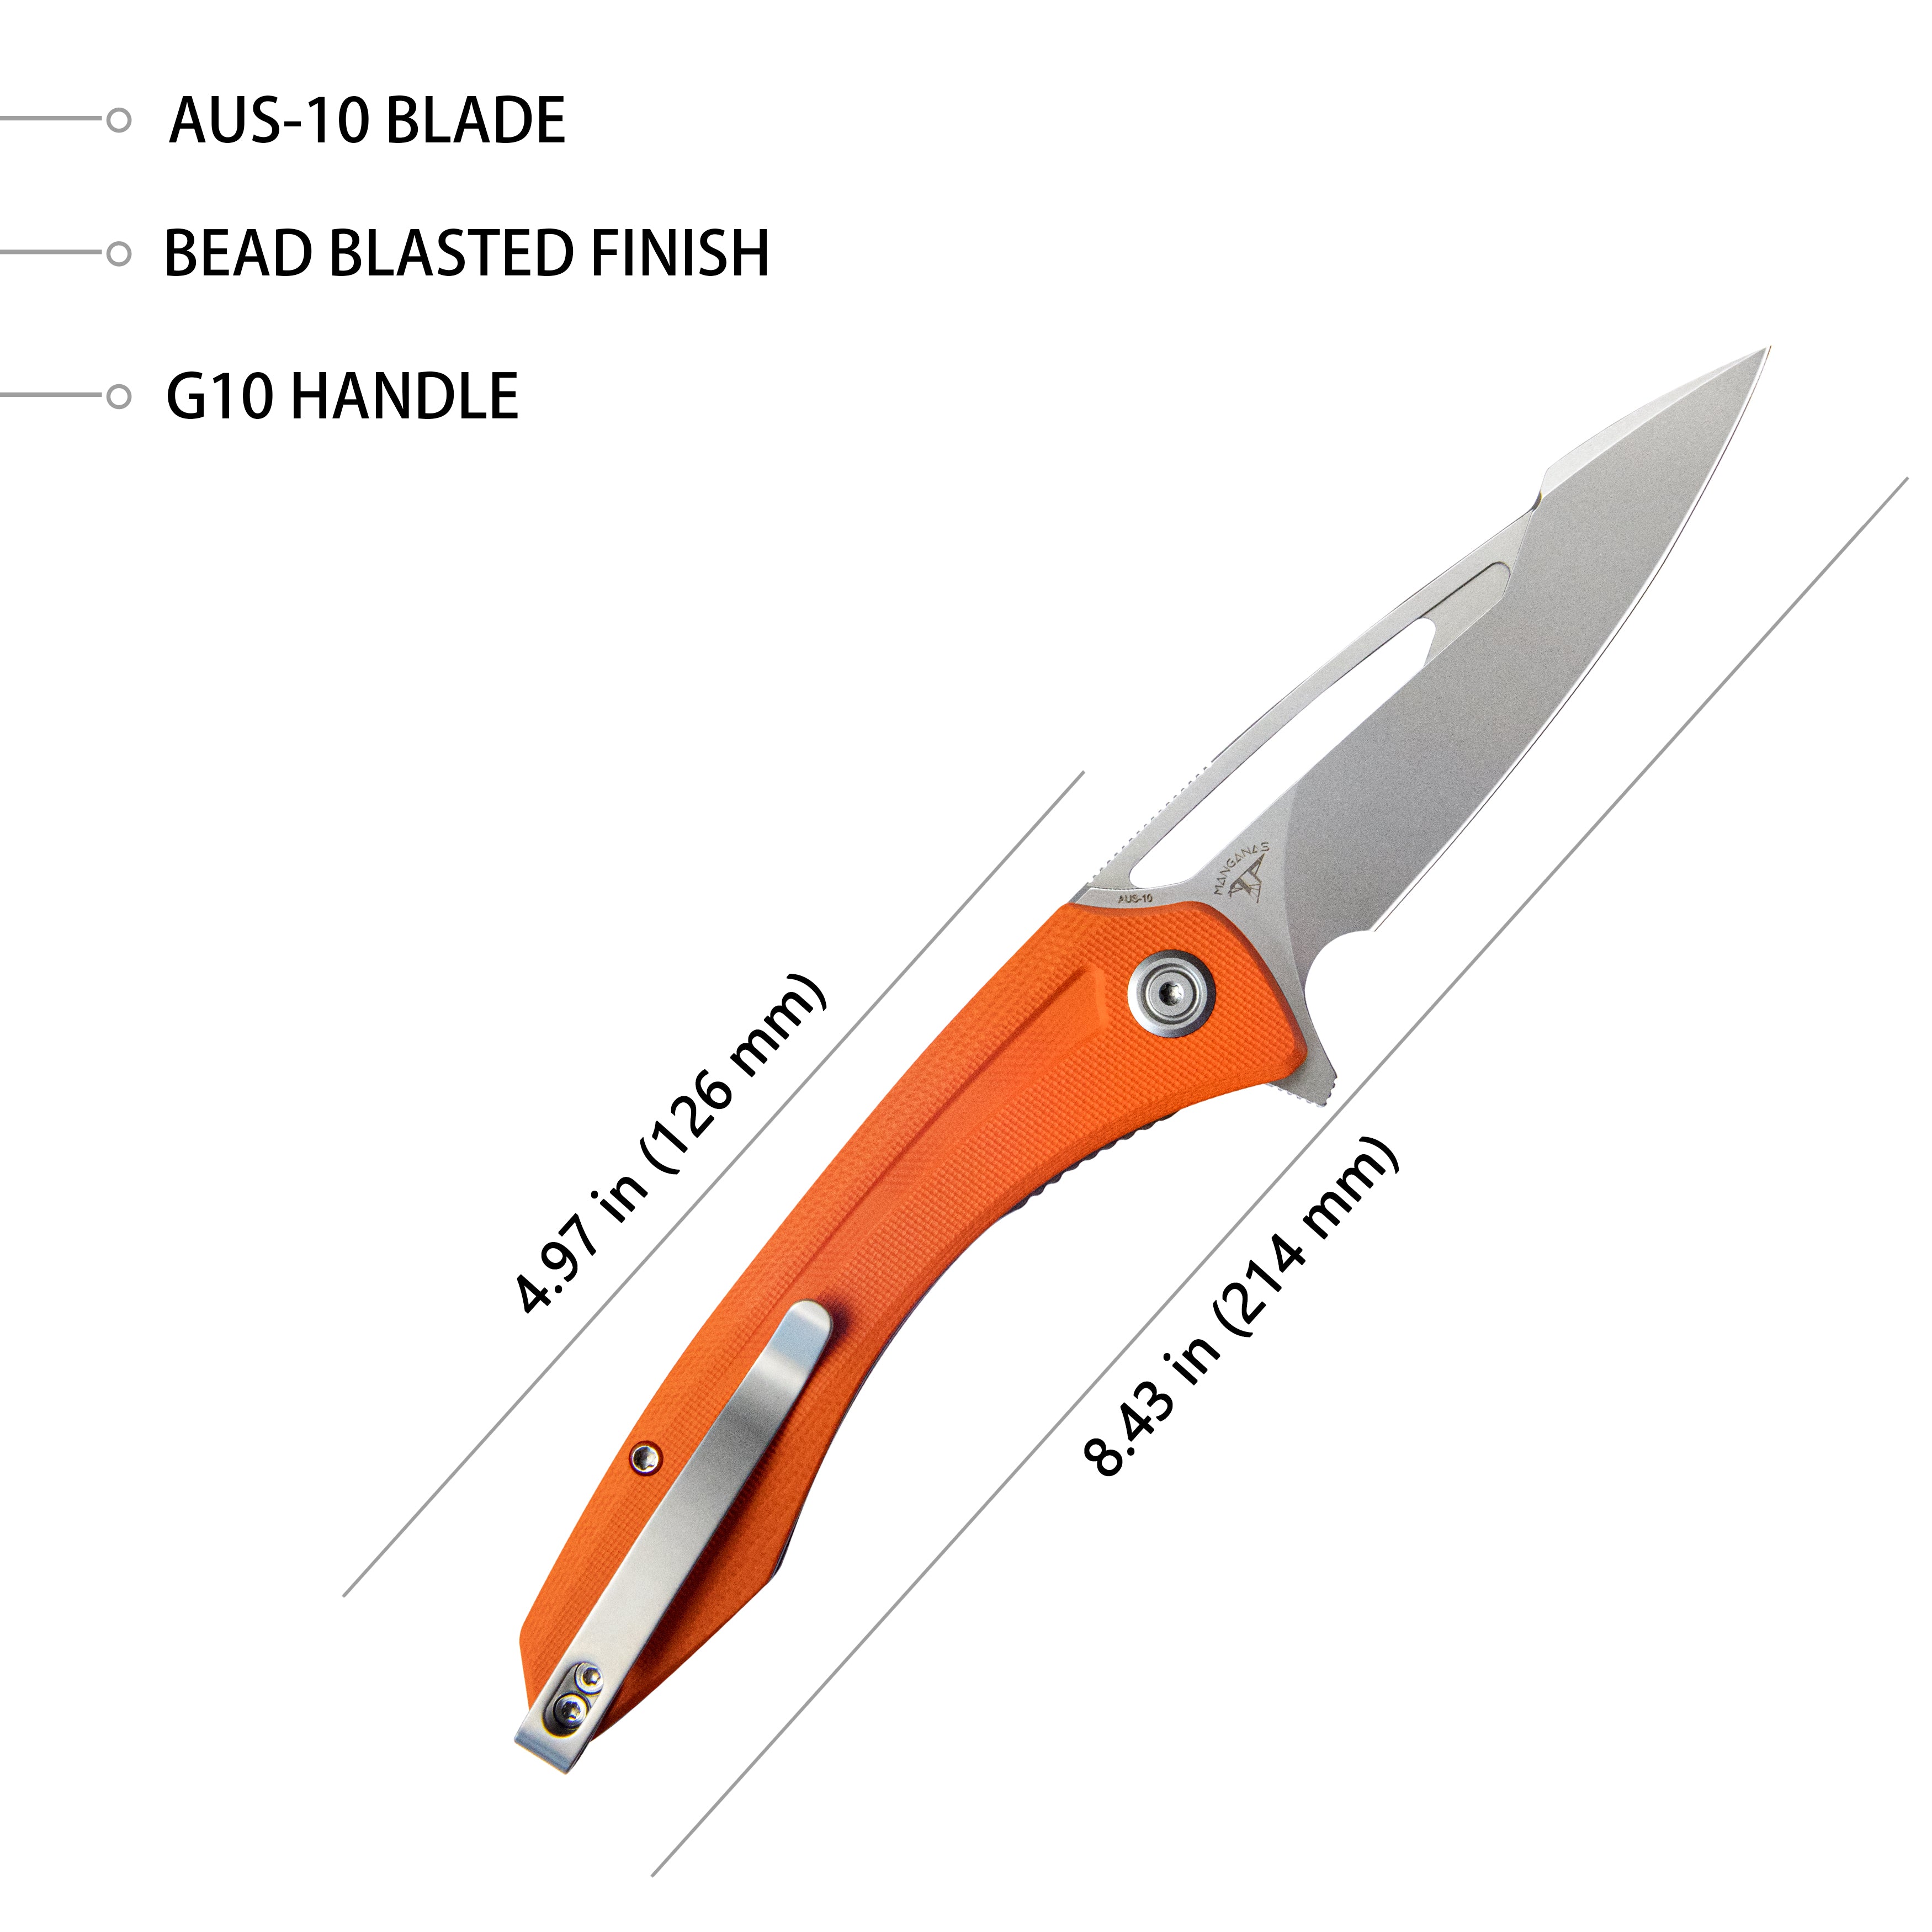 Kubey Merced Folding Knife 3.46" Beadblasted AUS-10 Blade With Durable Orange G10 Handle Reliable Tactical Pocket Knife KU345B